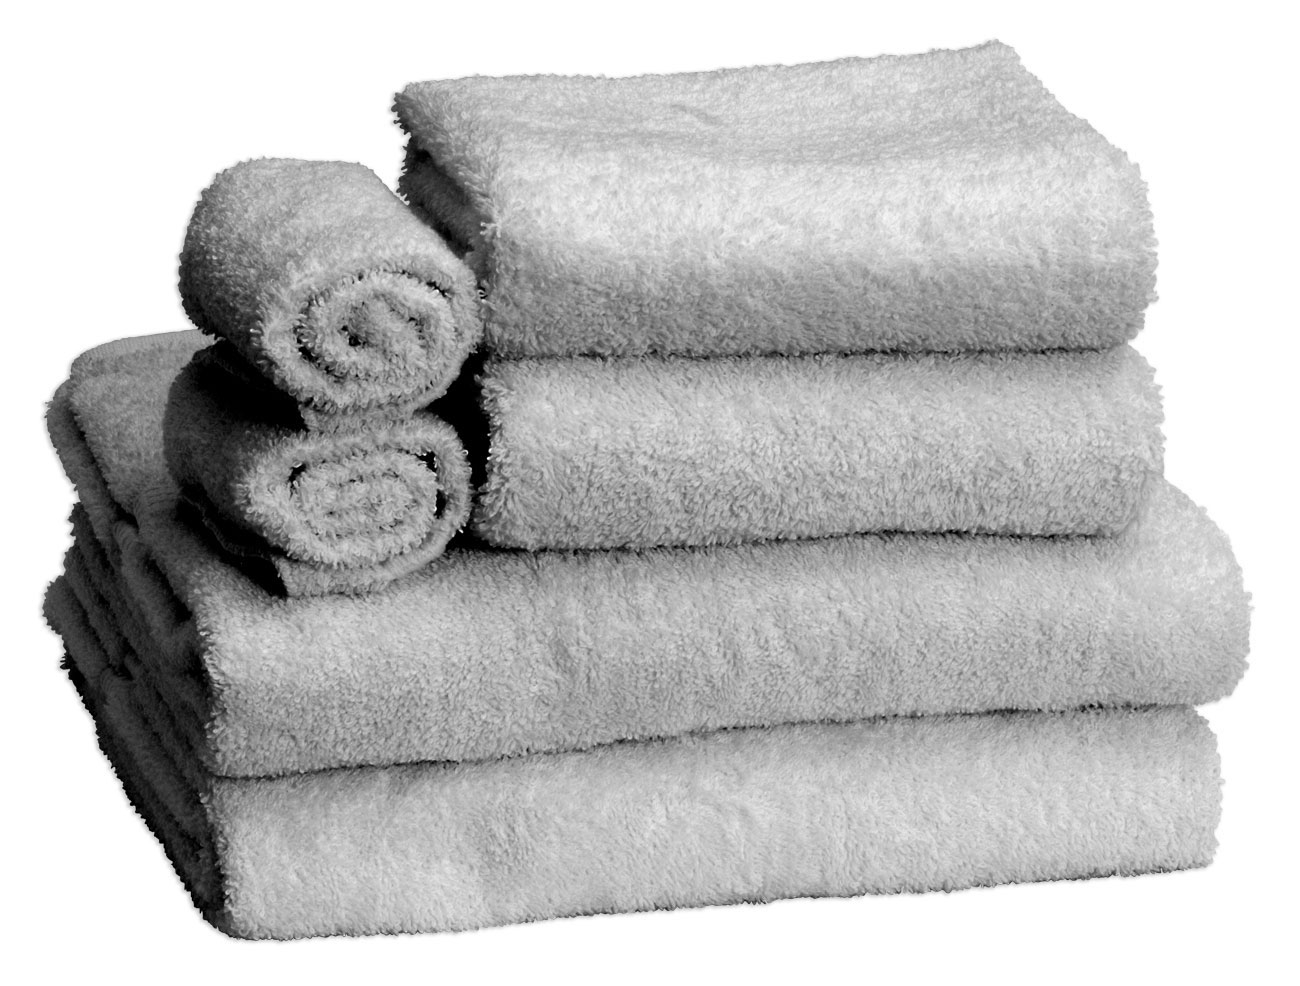 Allure Towel Set Grey